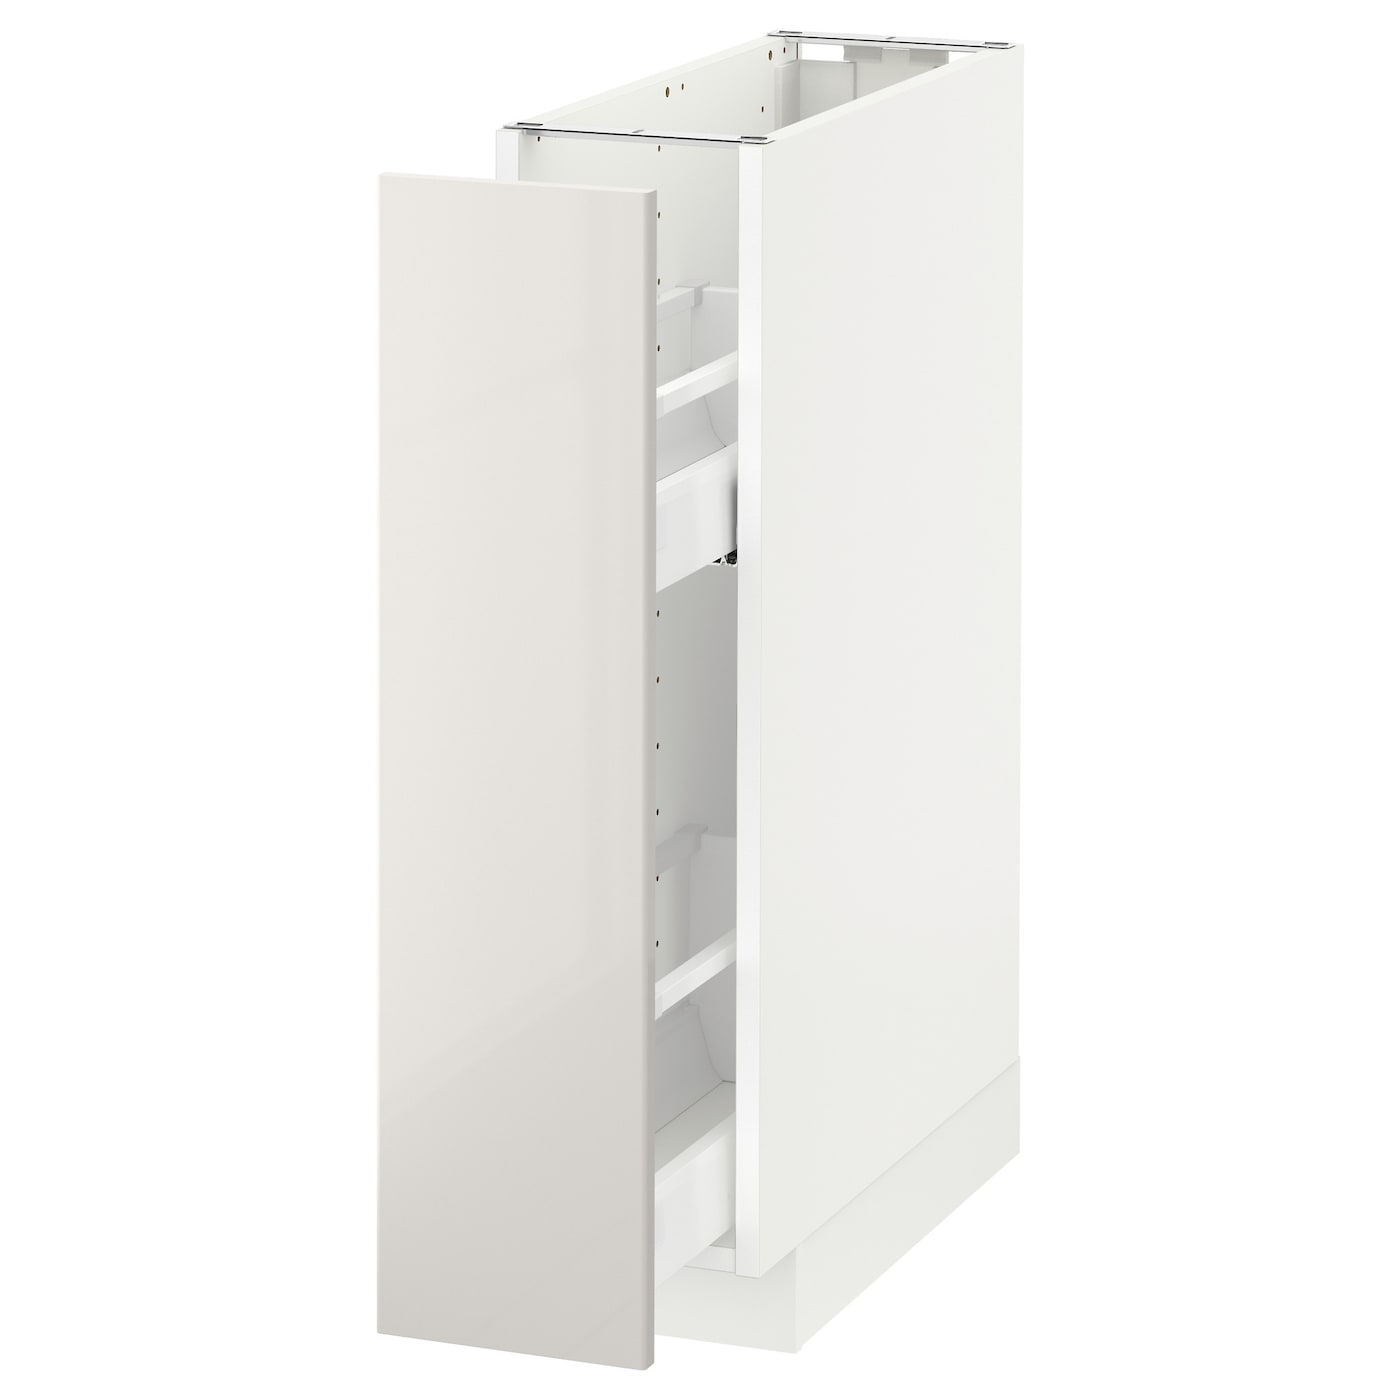 Напольный кухонный шкаф  - IKEA METOD, 88x62x20см, белый/светло-бежевый, МЕТОД ИКЕА